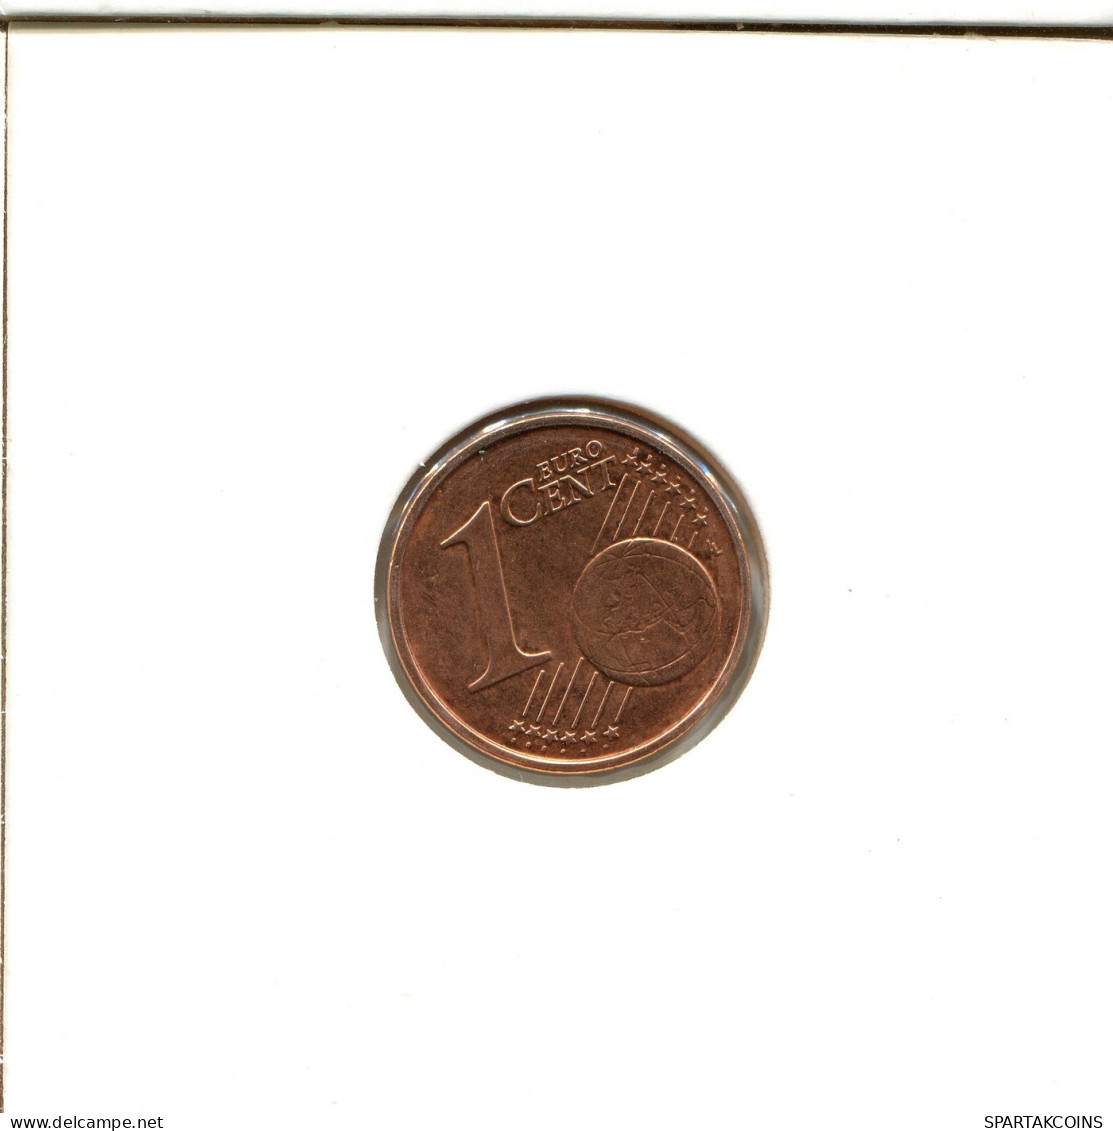 1 EURO CENT 2007 BÉLGICA BELGIUM Moneda #EU041.E.A - België